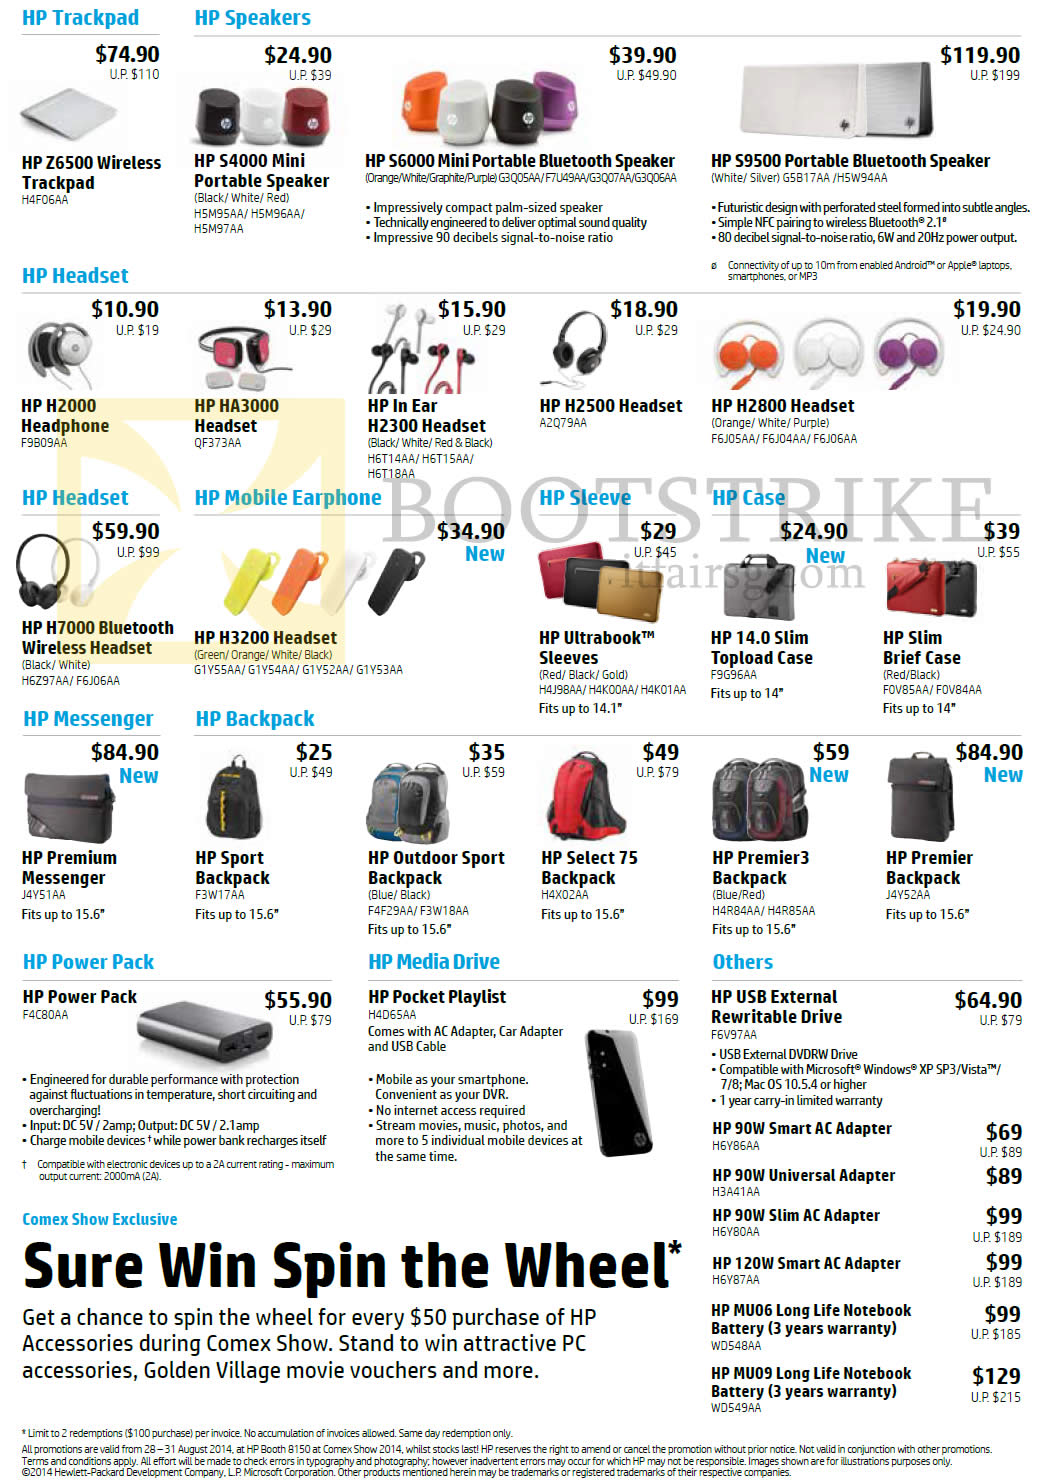 COMEX 2014 price list image brochure of HP Accessories Trackpad, Speakers, Headsets, Earphones, Sleeve, Cases, Messenger, Backpacks, PowerPack, Media Drive